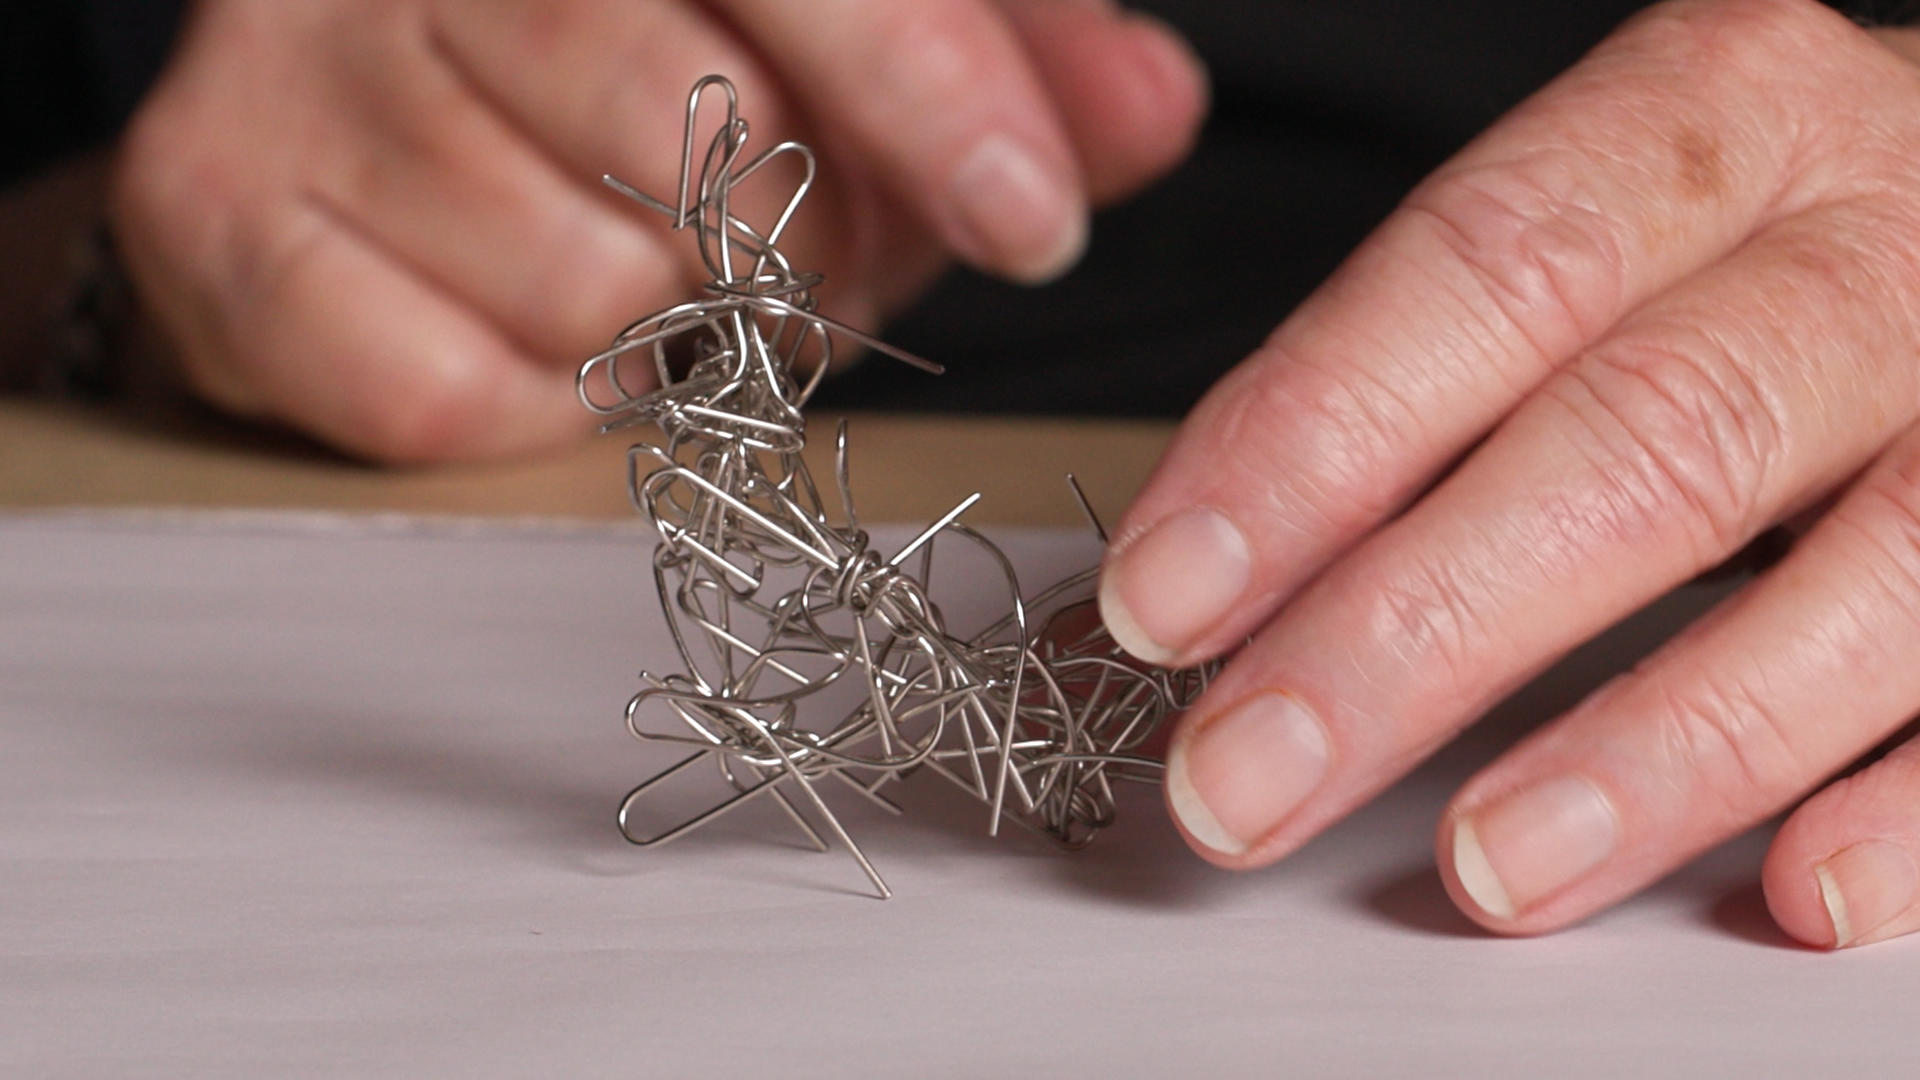 A paper clip sculpture